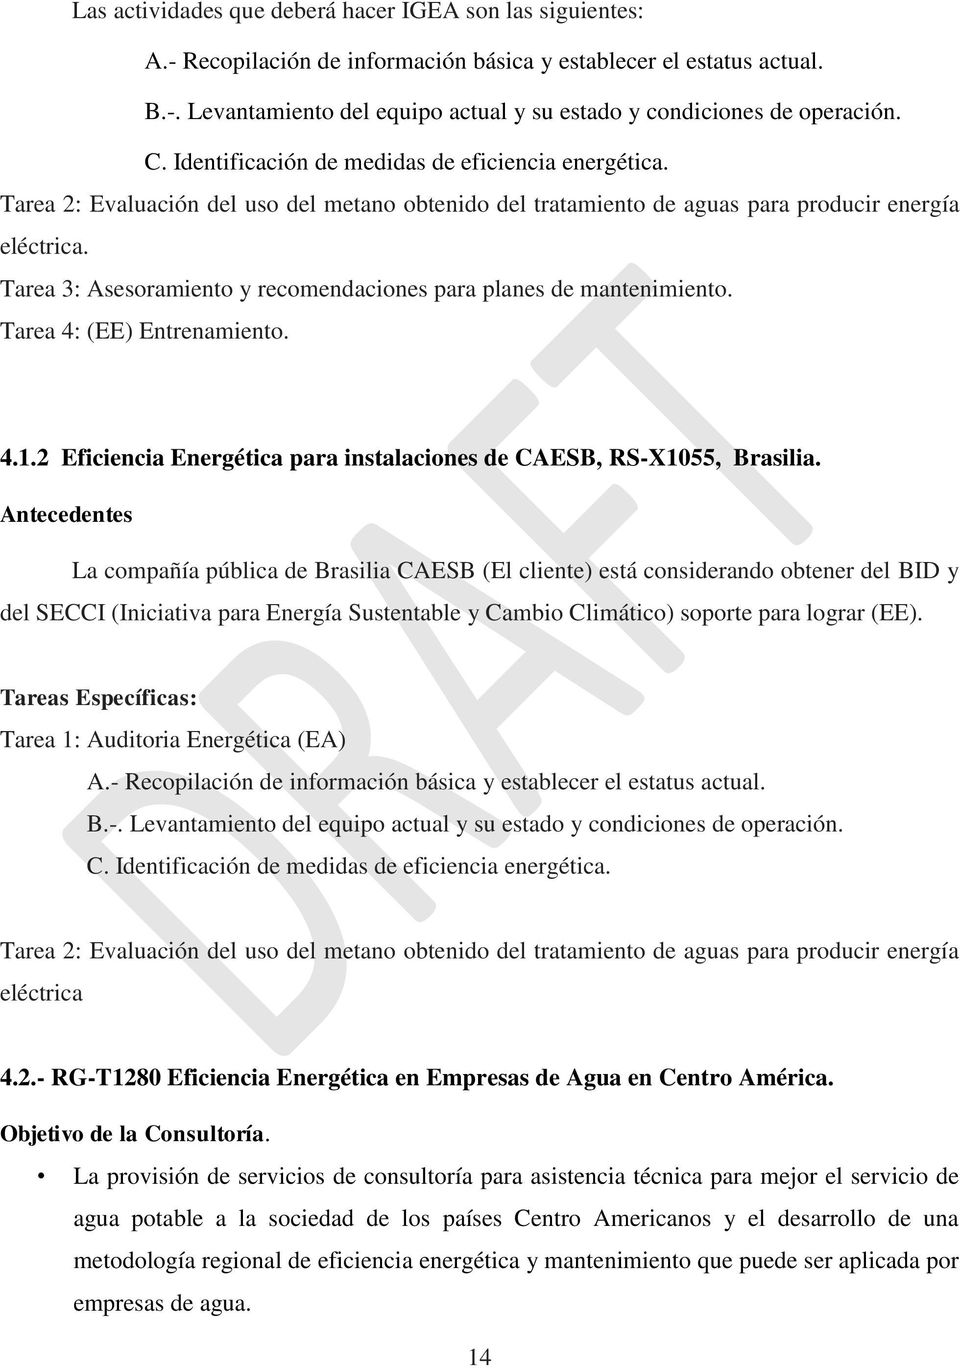 Tarea 3: Asesoramiento y recomendaciones para planes de mantenimiento. Tarea 4: (EE) Entrenamiento. 4.1.2 Eficiencia Energética para instalaciones de CAESB, RS-1055, Brasilia.